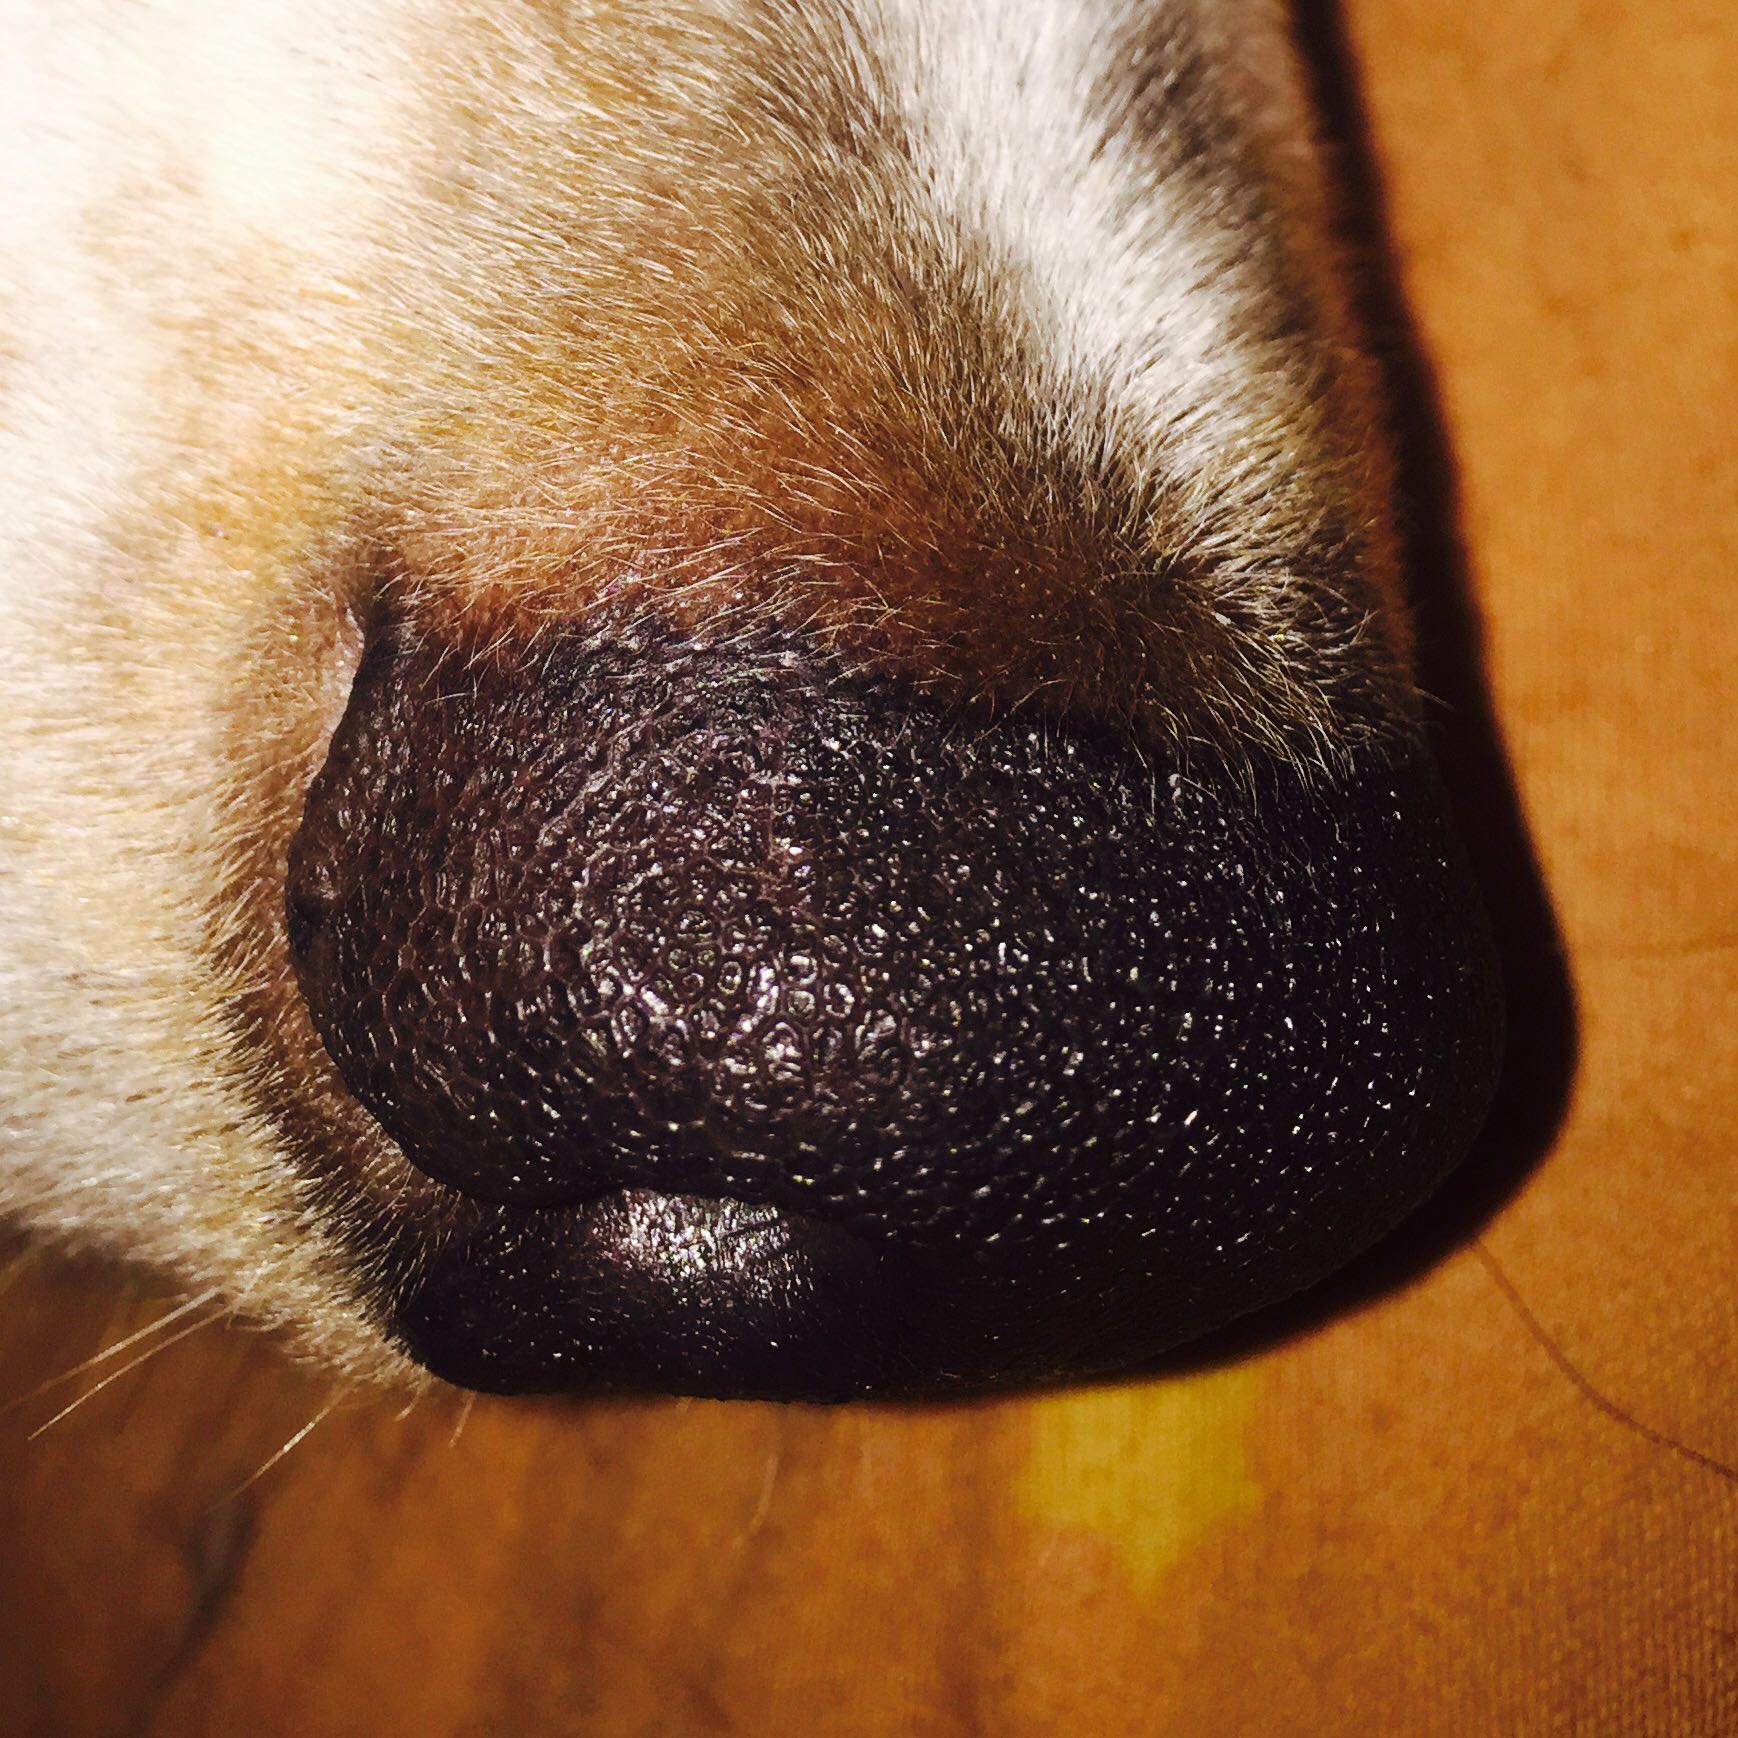 Hund wurde gebissen an der Nase. Regeneriert sich die Hautfarbe